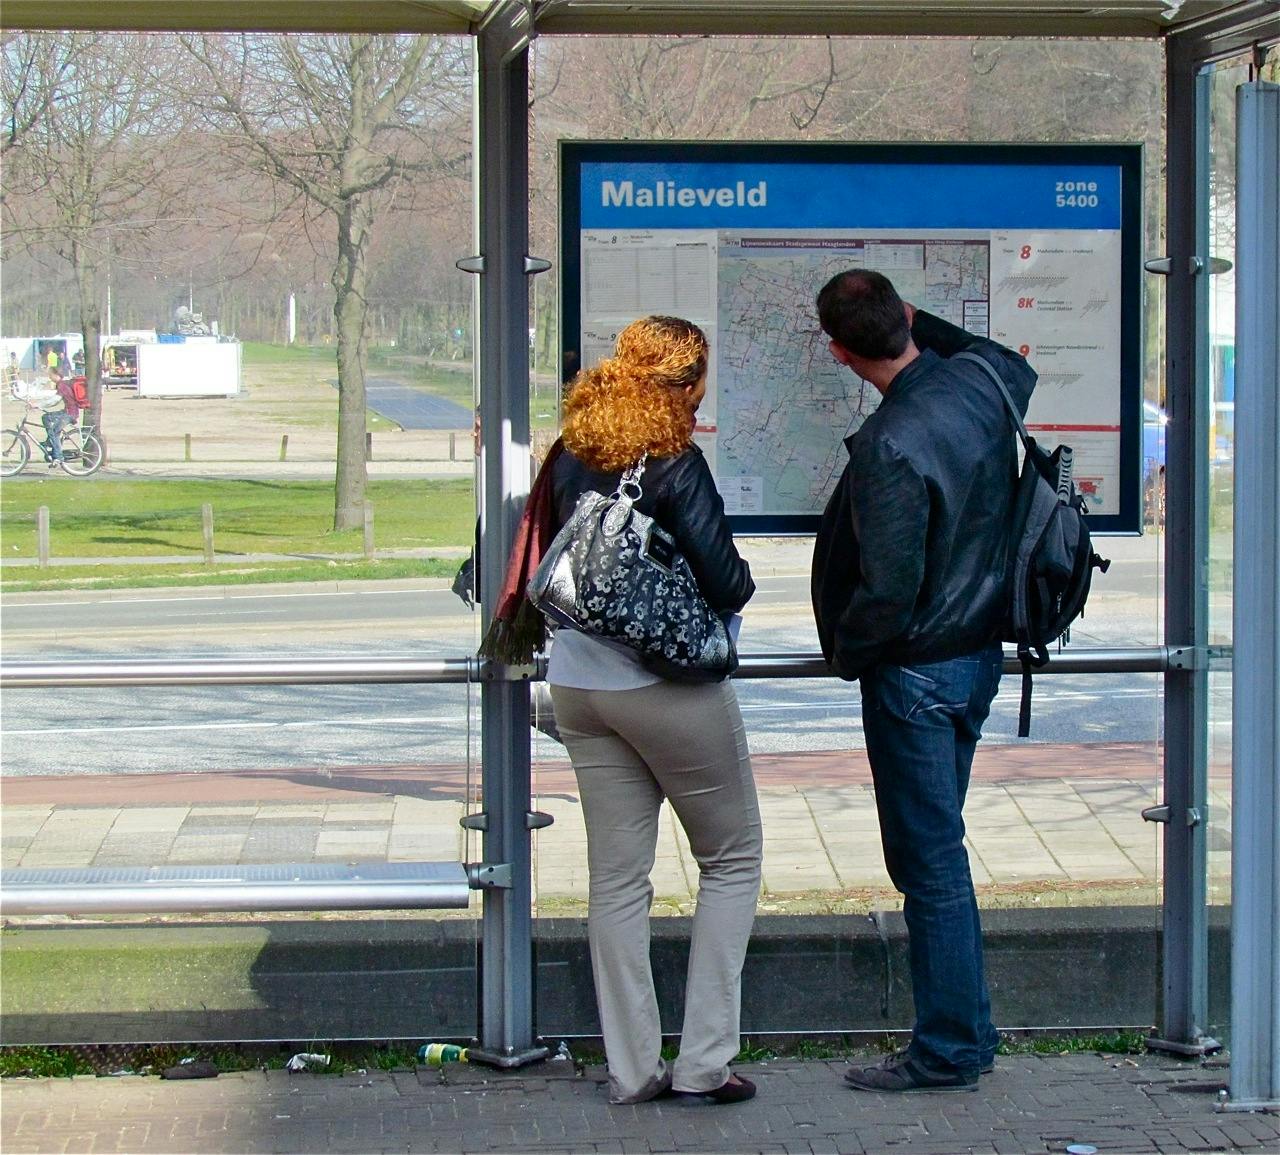 Twee mensen bij OV-halte Malieveld in Den Haag.